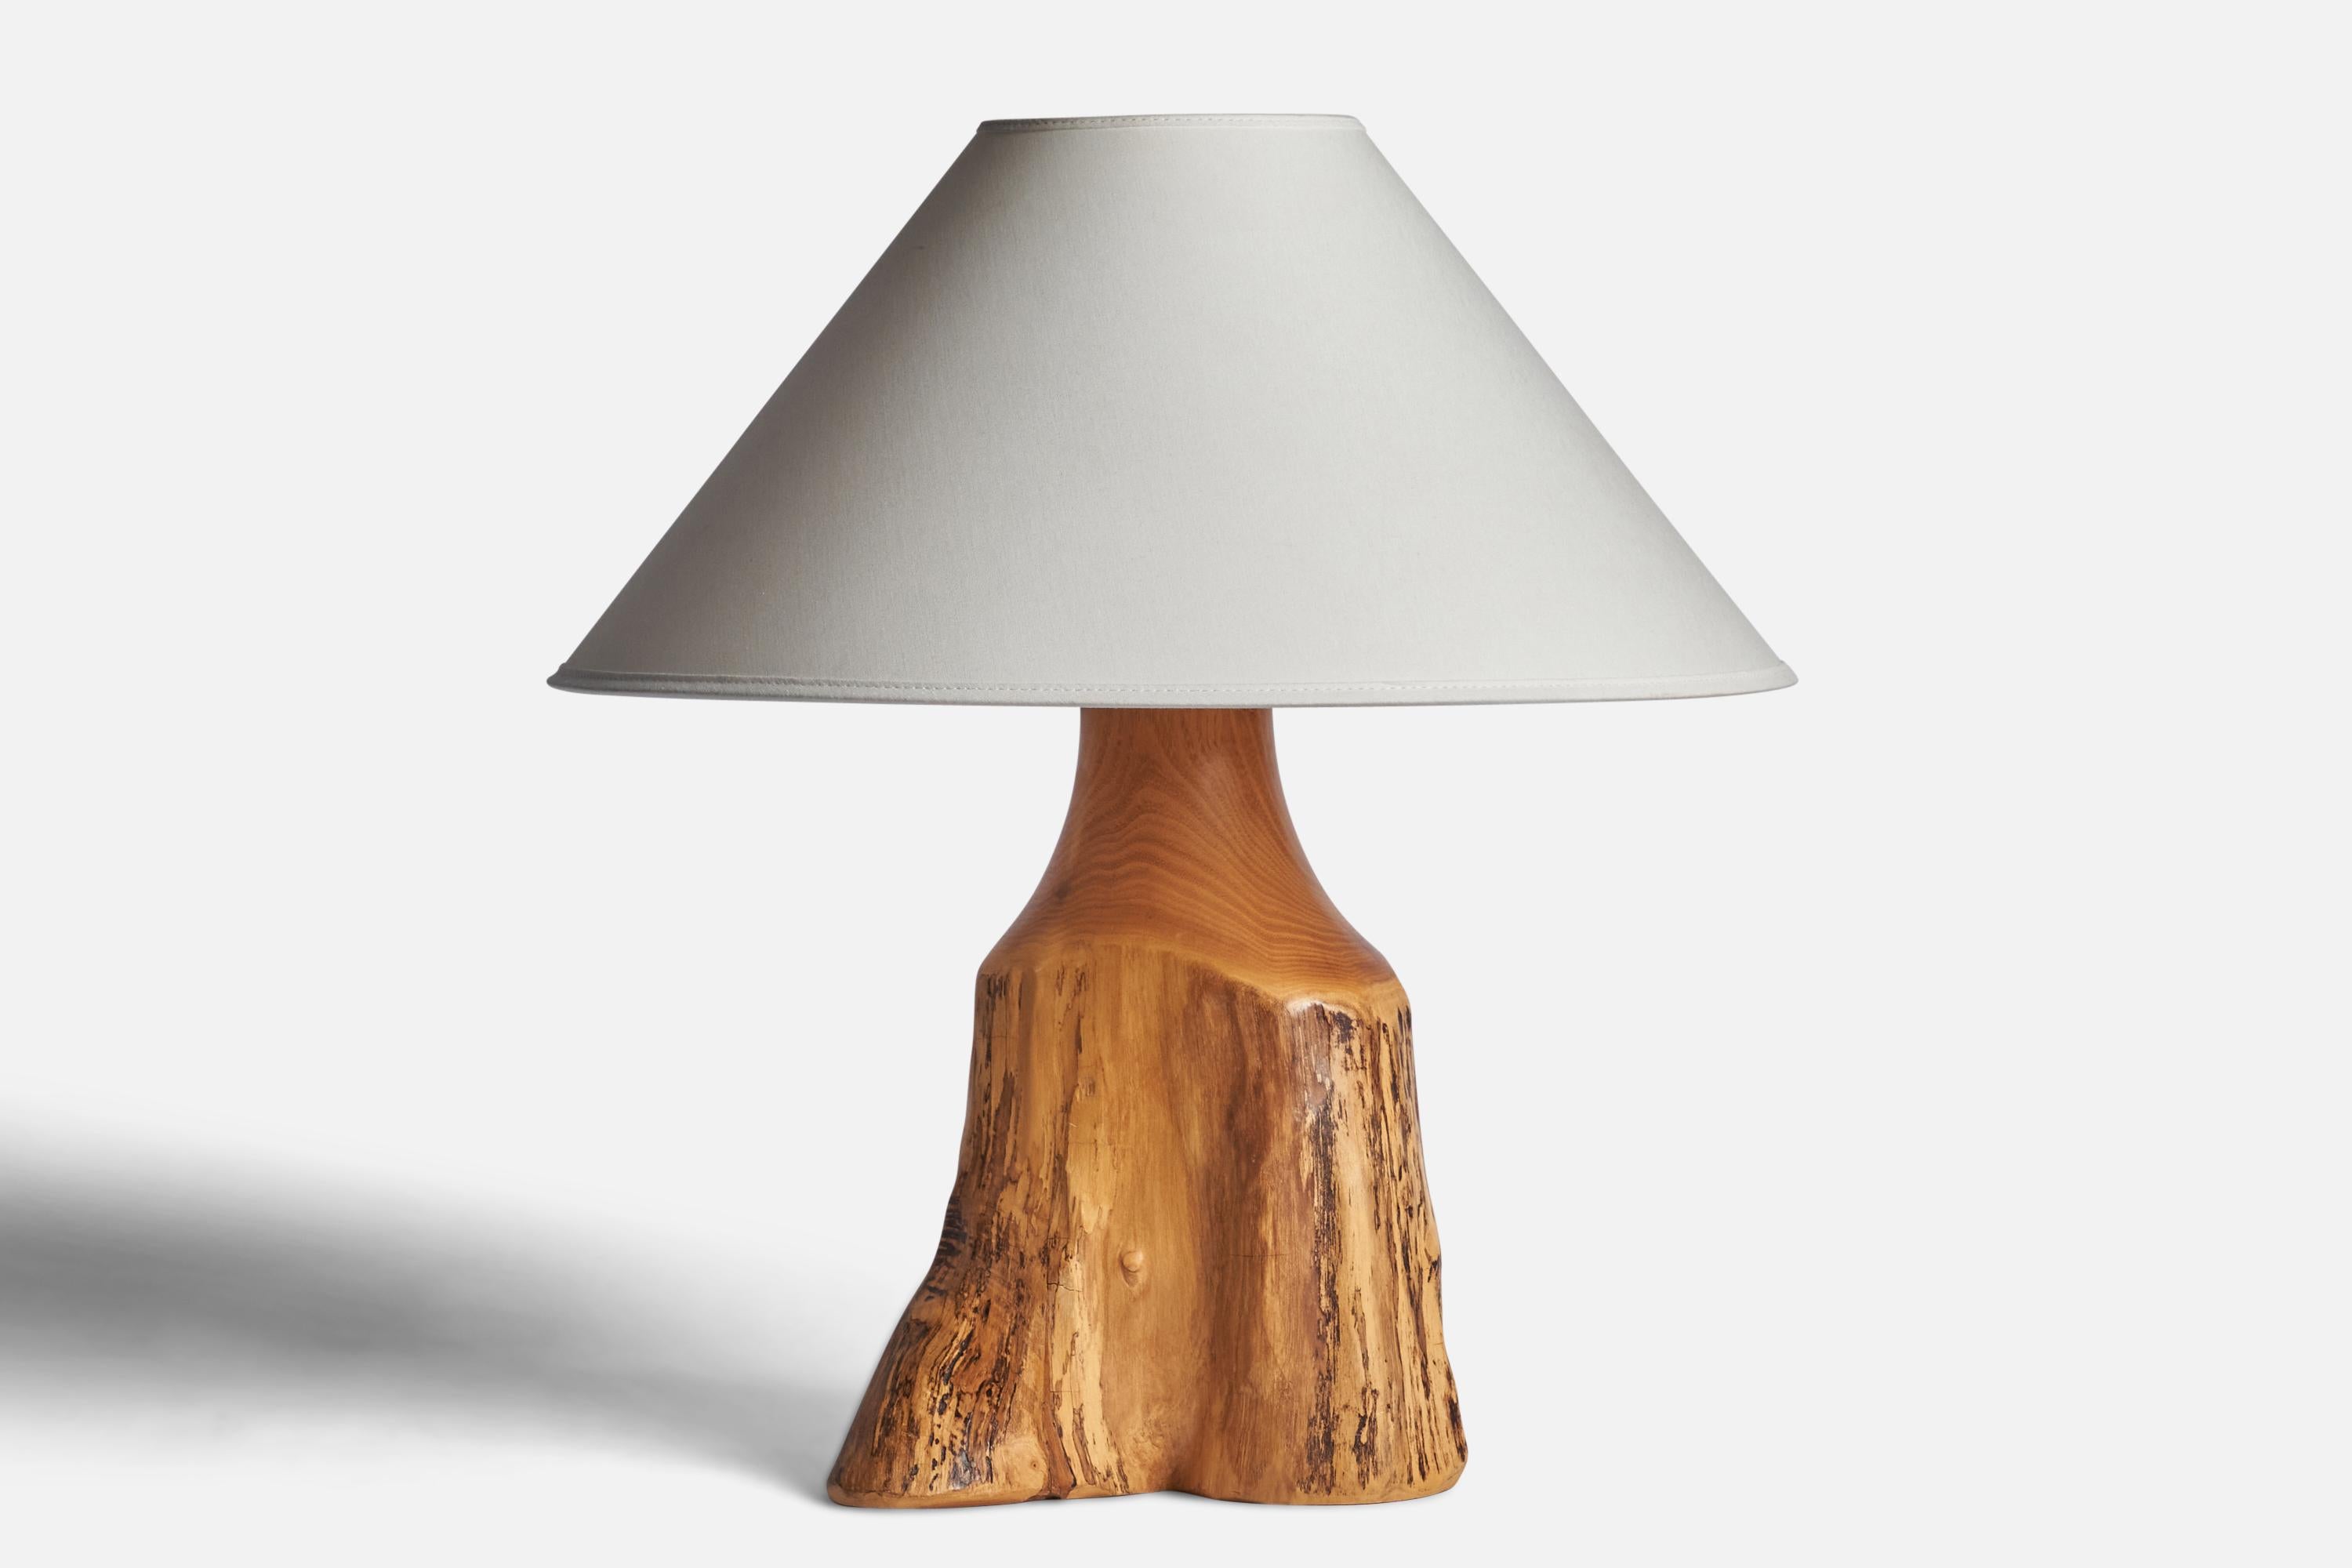 Eine frei geformte Tischlampe aus Pappelholz, entworfen und hergestellt von Sigvard Nilsson, Schweden, 1960er Jahre.

Abmessungen der Lampe (Zoll): 13,35